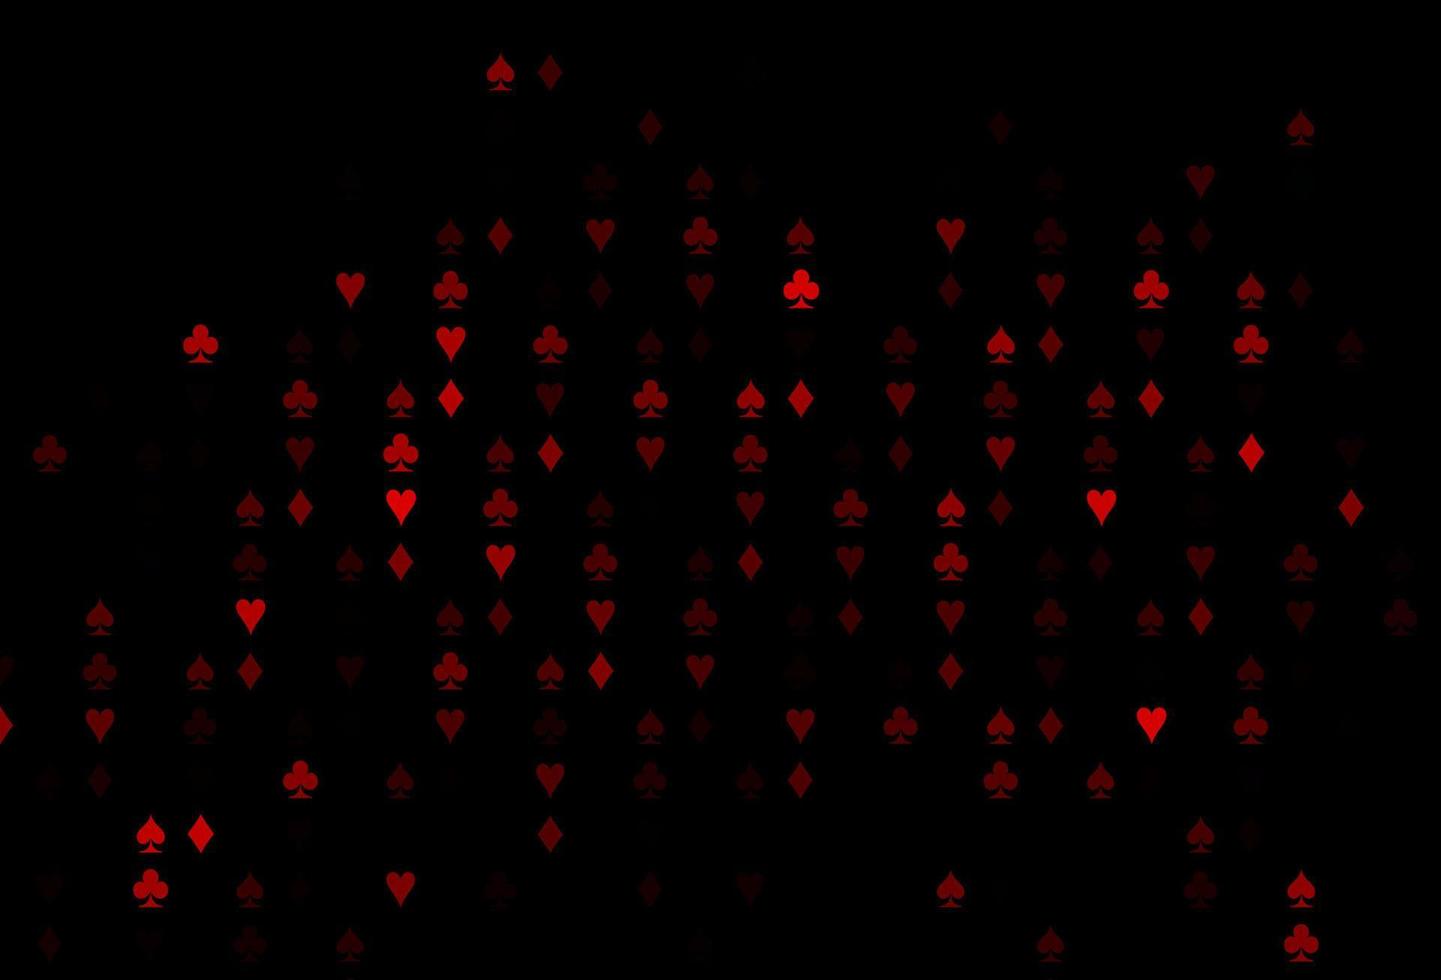 padrão de vetor vermelho escuro com símbolo de cartas.